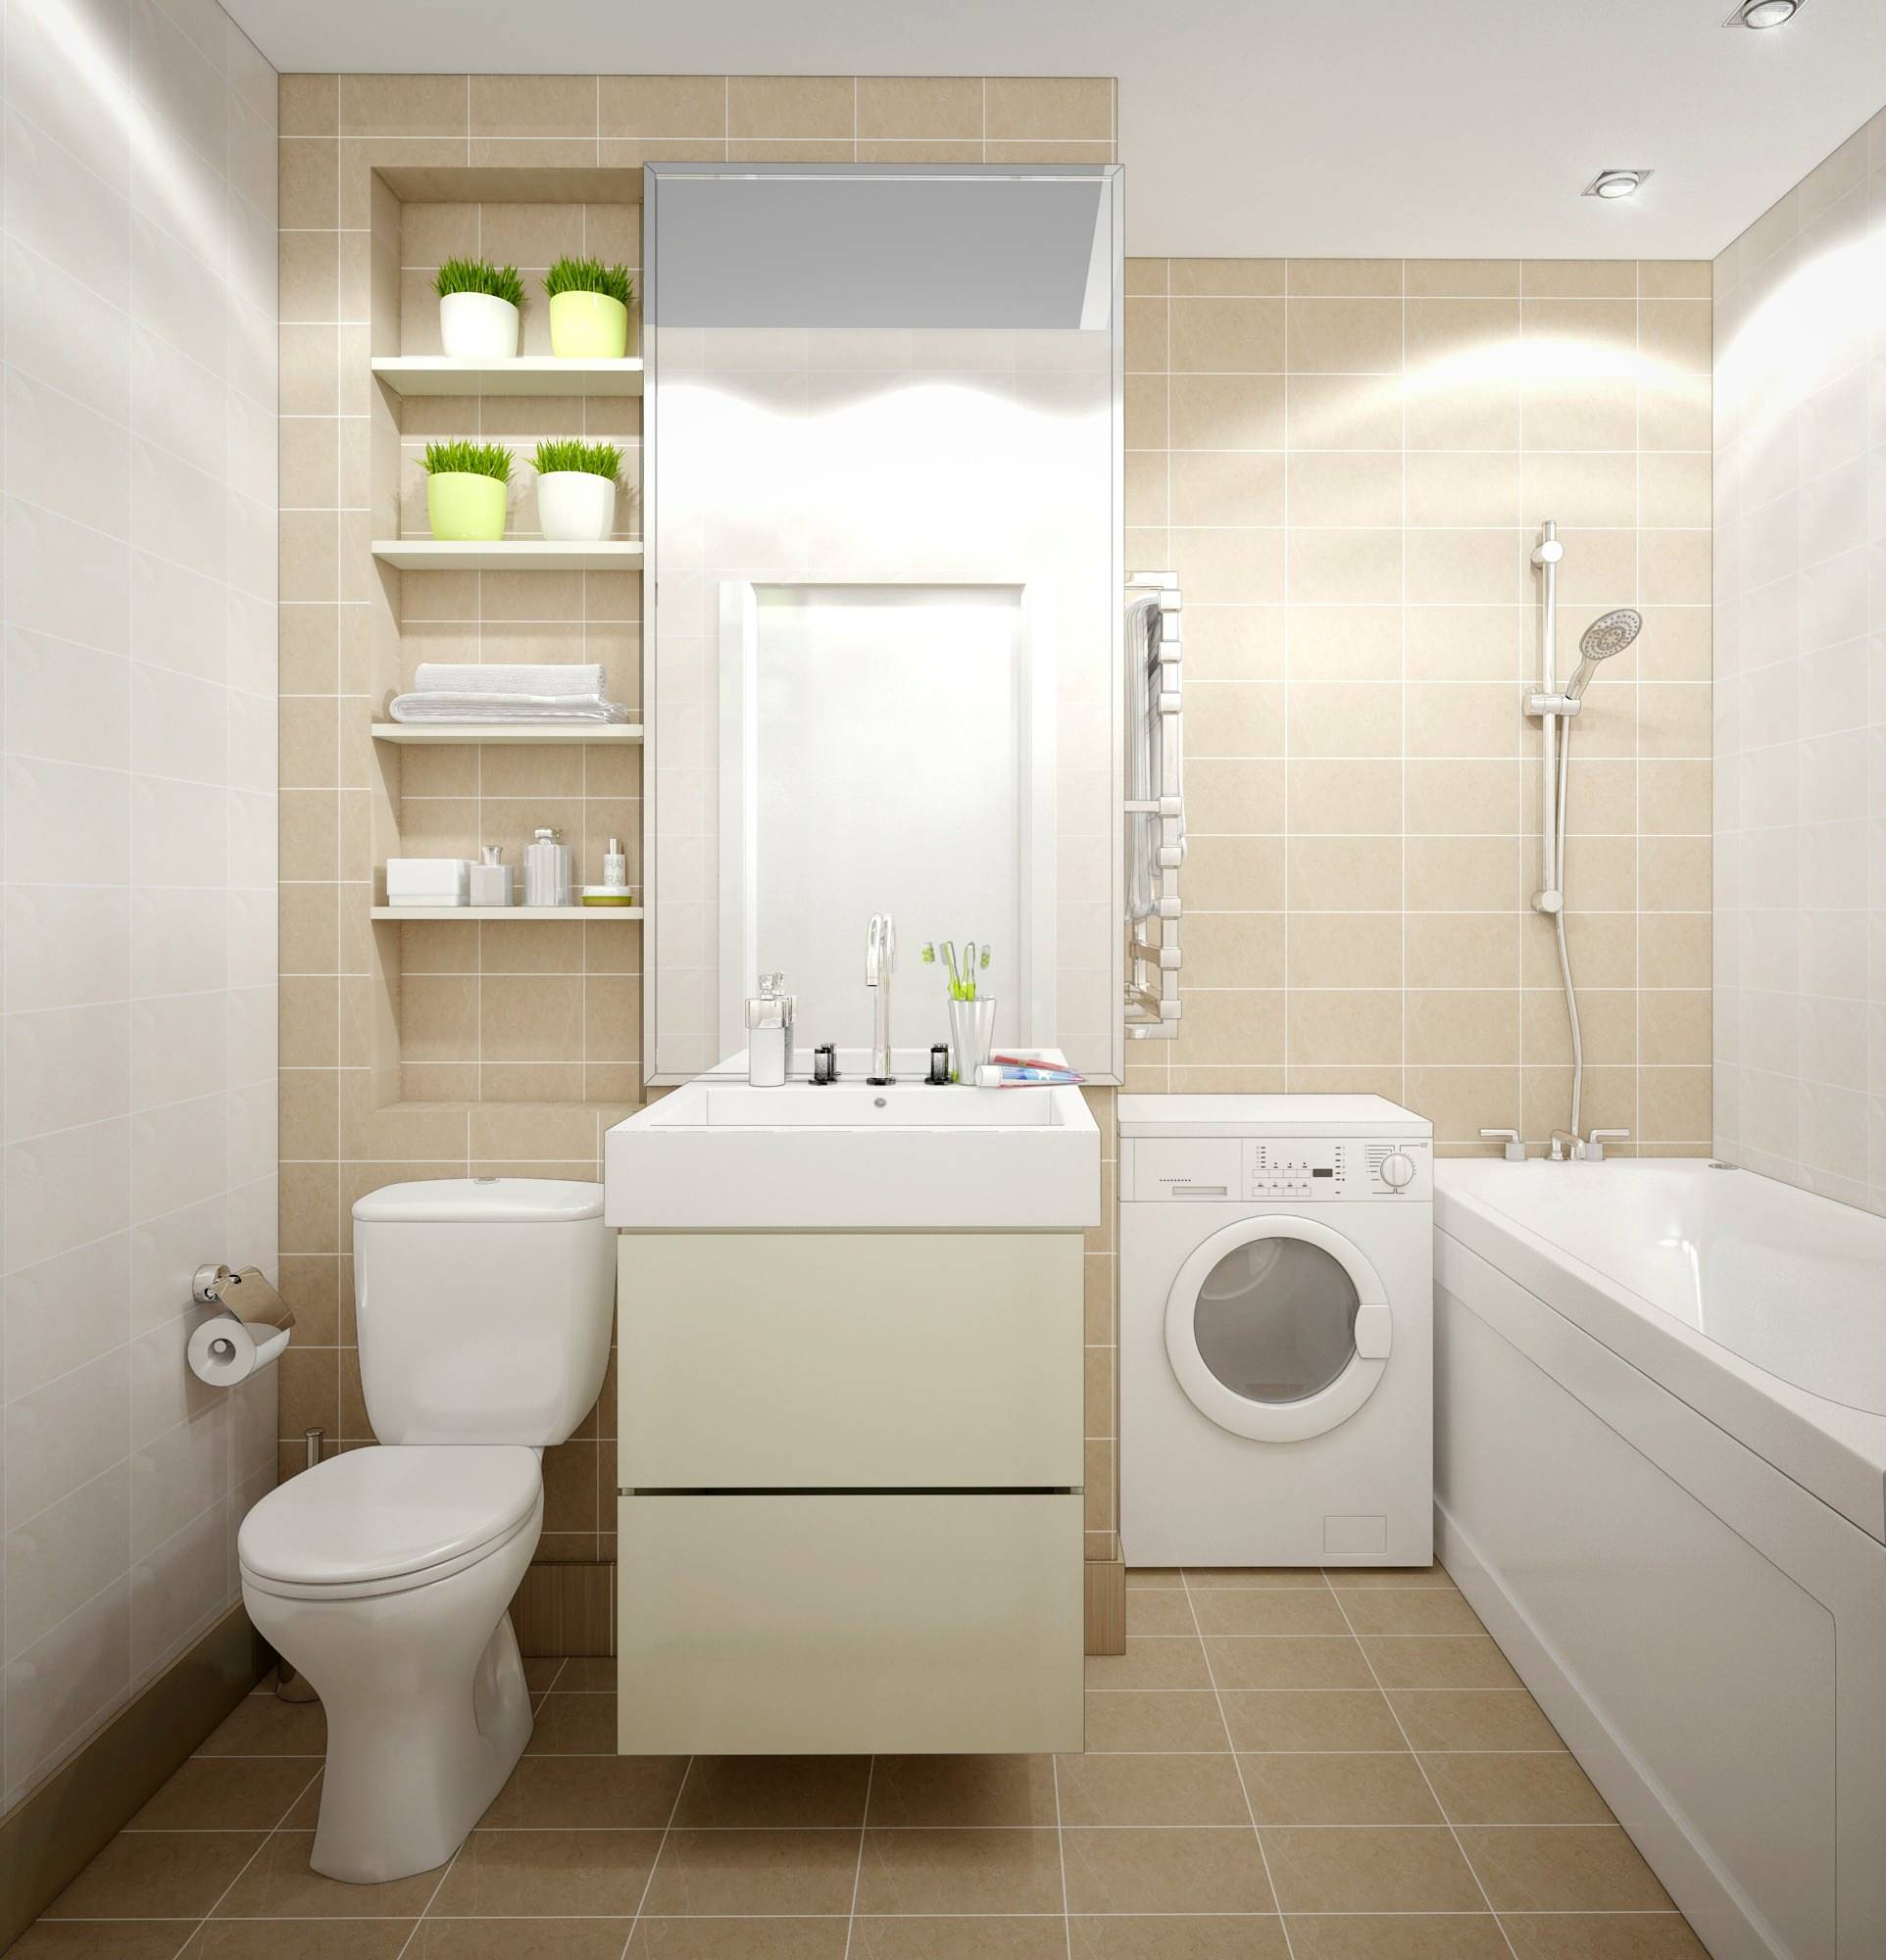 Плюсы и минусы совмещенного санузла, фото удачной планировки при объединении туалета с ванной, а также советы по выбору отделки и дизайна совмещенного санузла